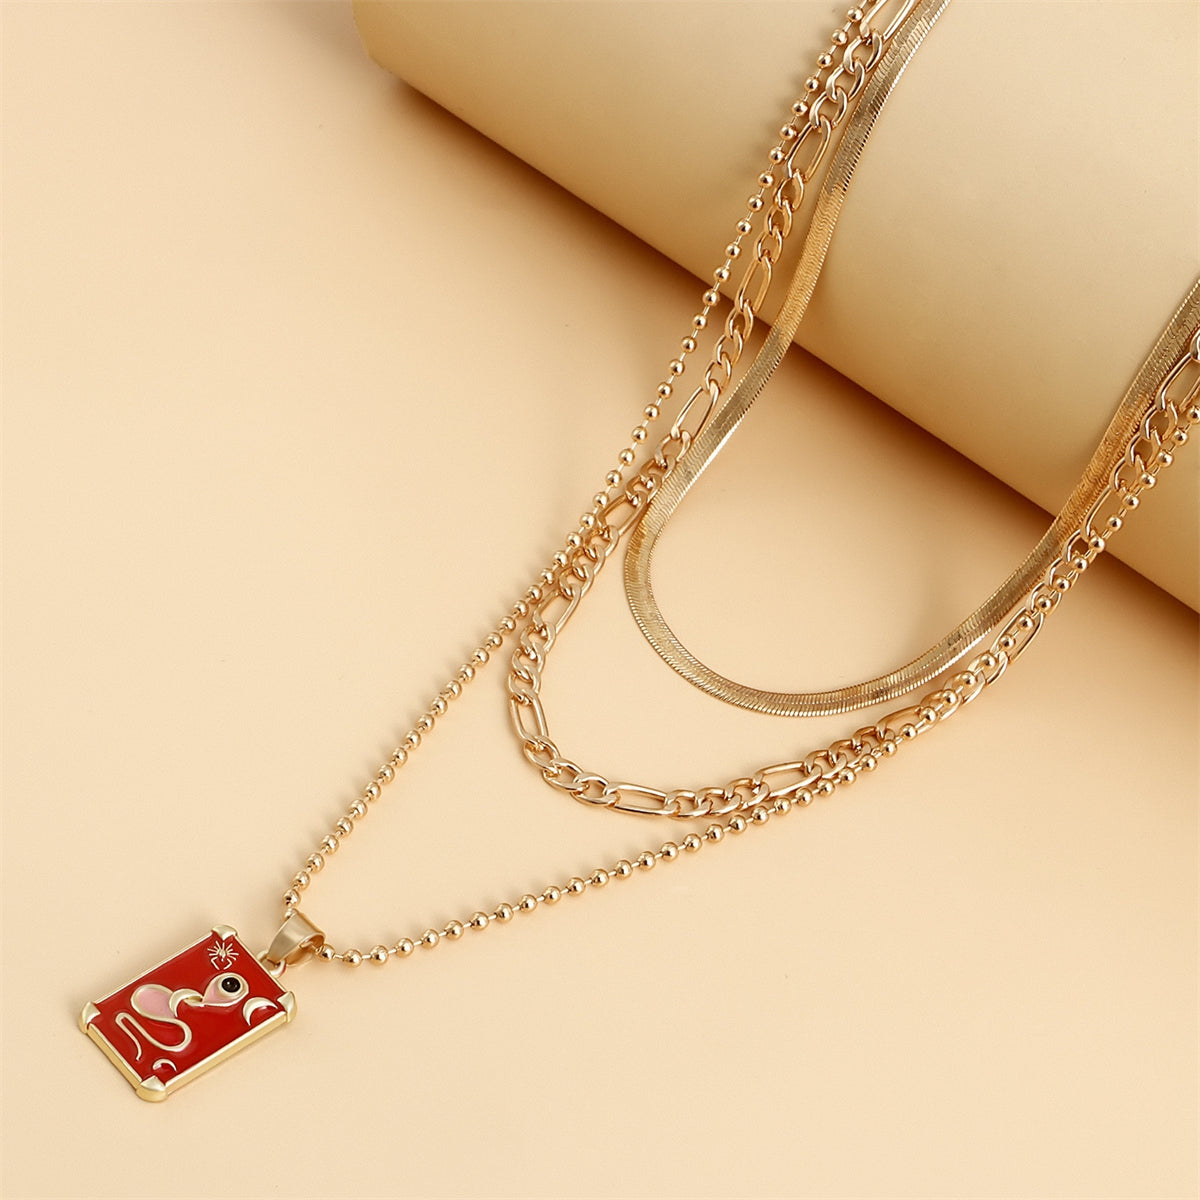 Red Enamel & 18K Gold-Plated Snake Card Pendant Necklace Set